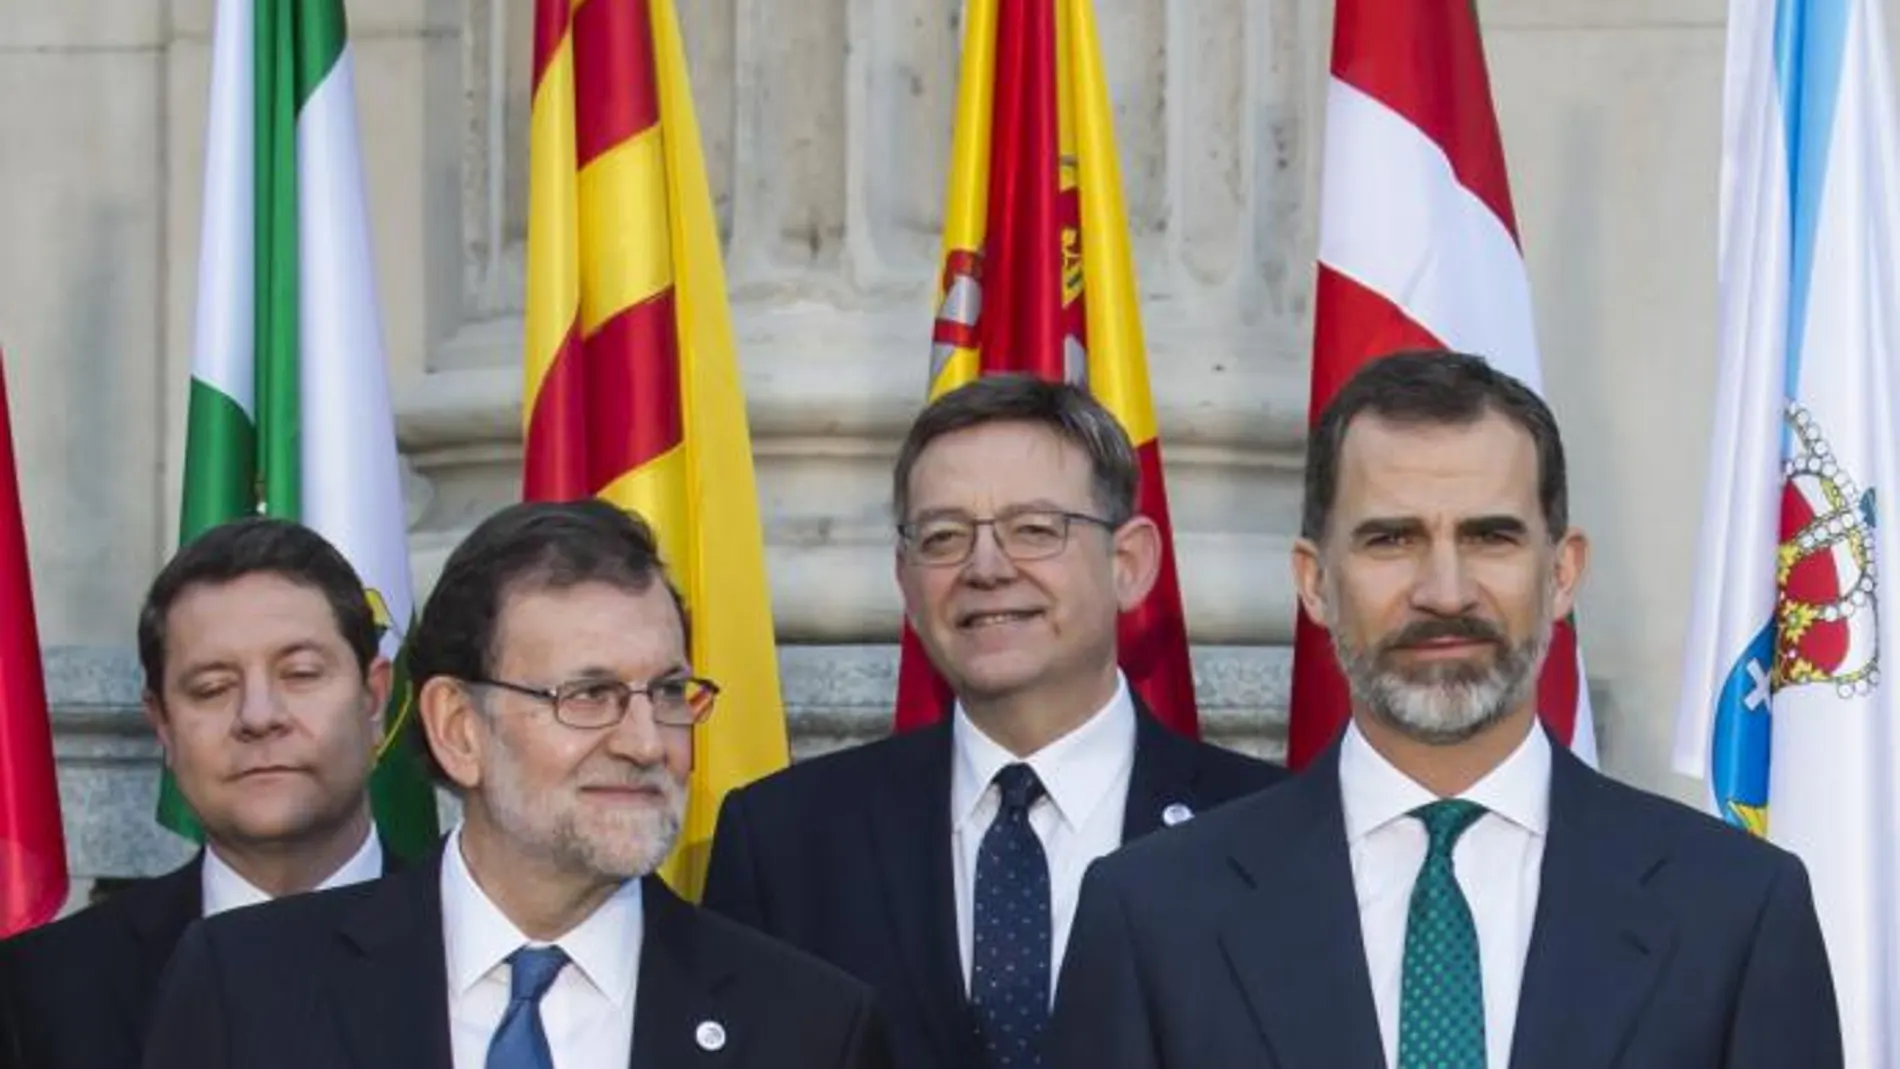 Puig, en la foto de familia, posó detrás del presidente del Gobierno y del Rey